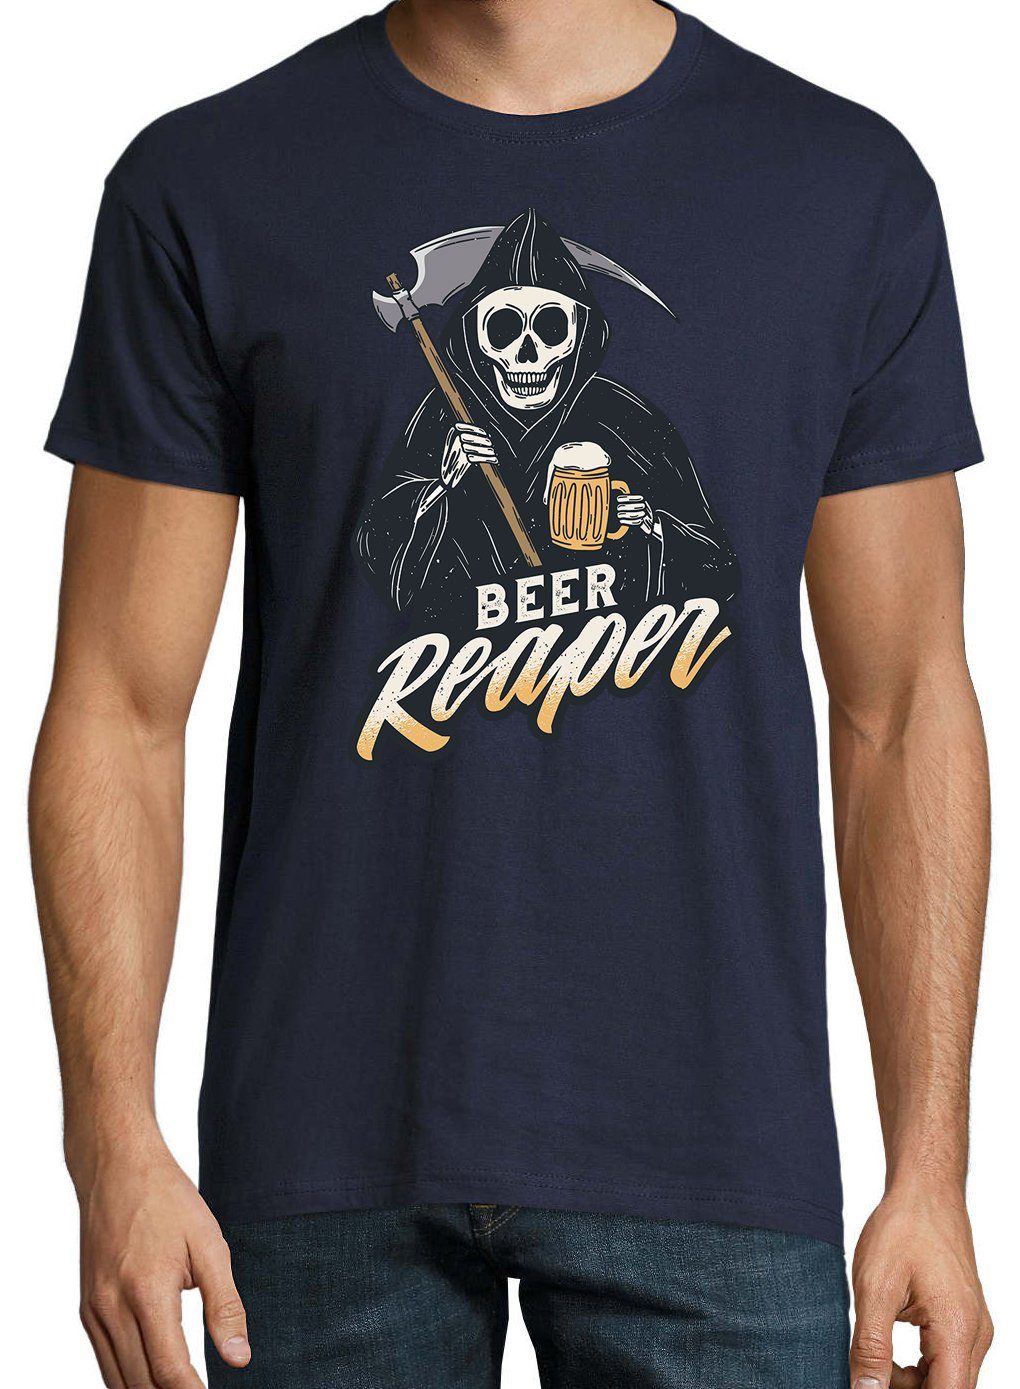 Herren lustigem Designz Youth mit Frontprint Reaper Navyblau T-Shirt Shirt Bier